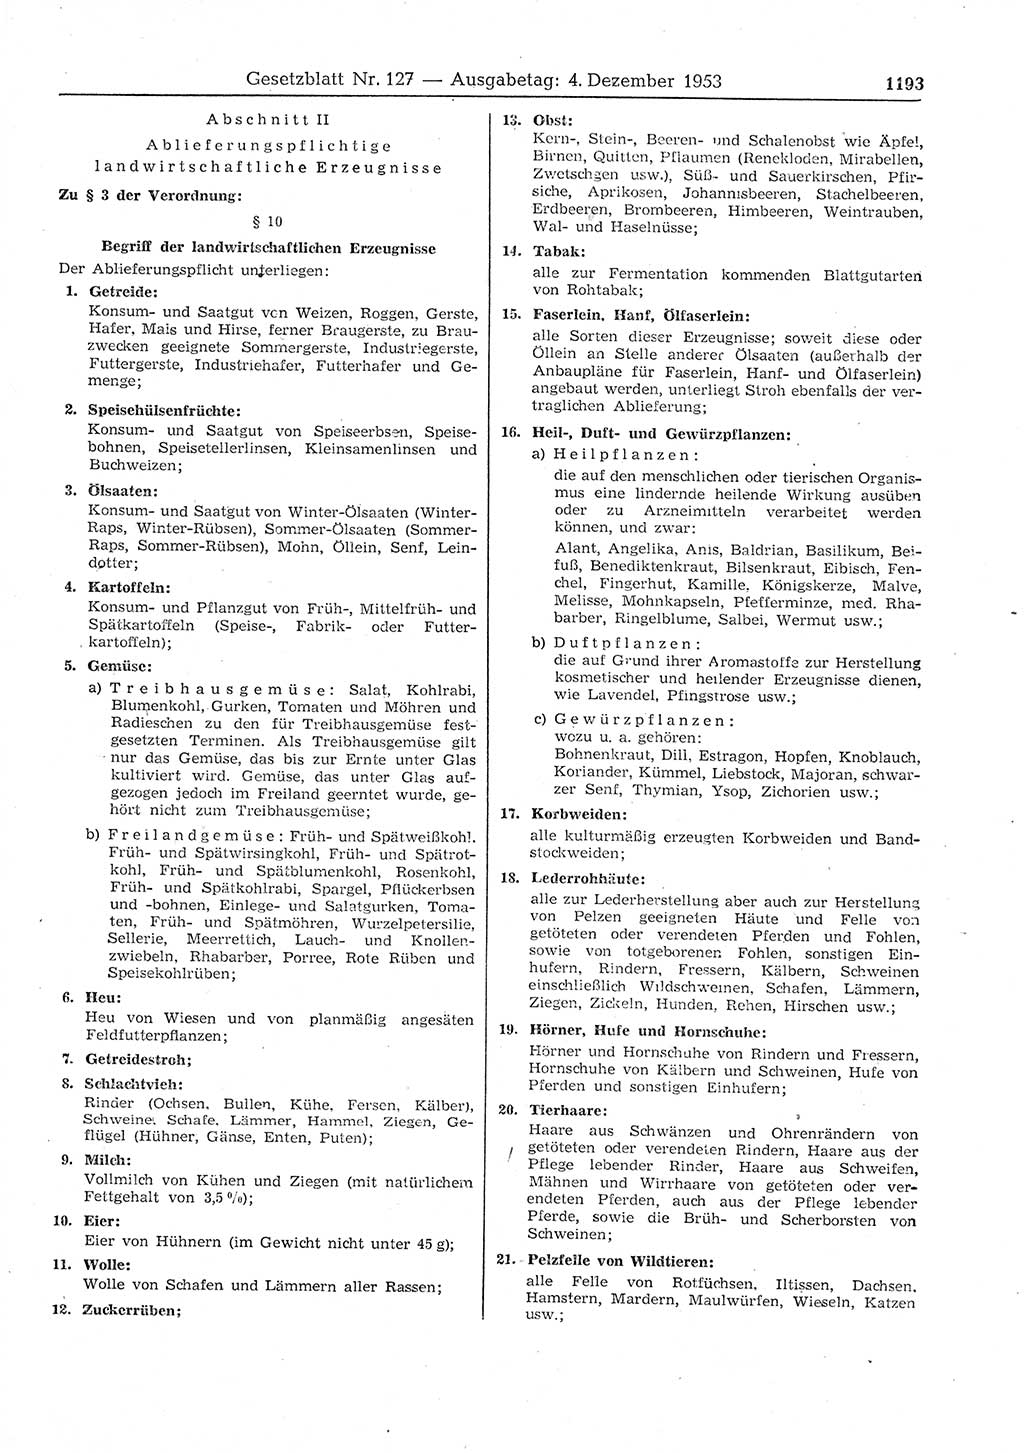 Gesetzblatt (GBl.) der Deutschen Demokratischen Republik (DDR) 1953, Seite 1193 (GBl. DDR 1953, S. 1193)